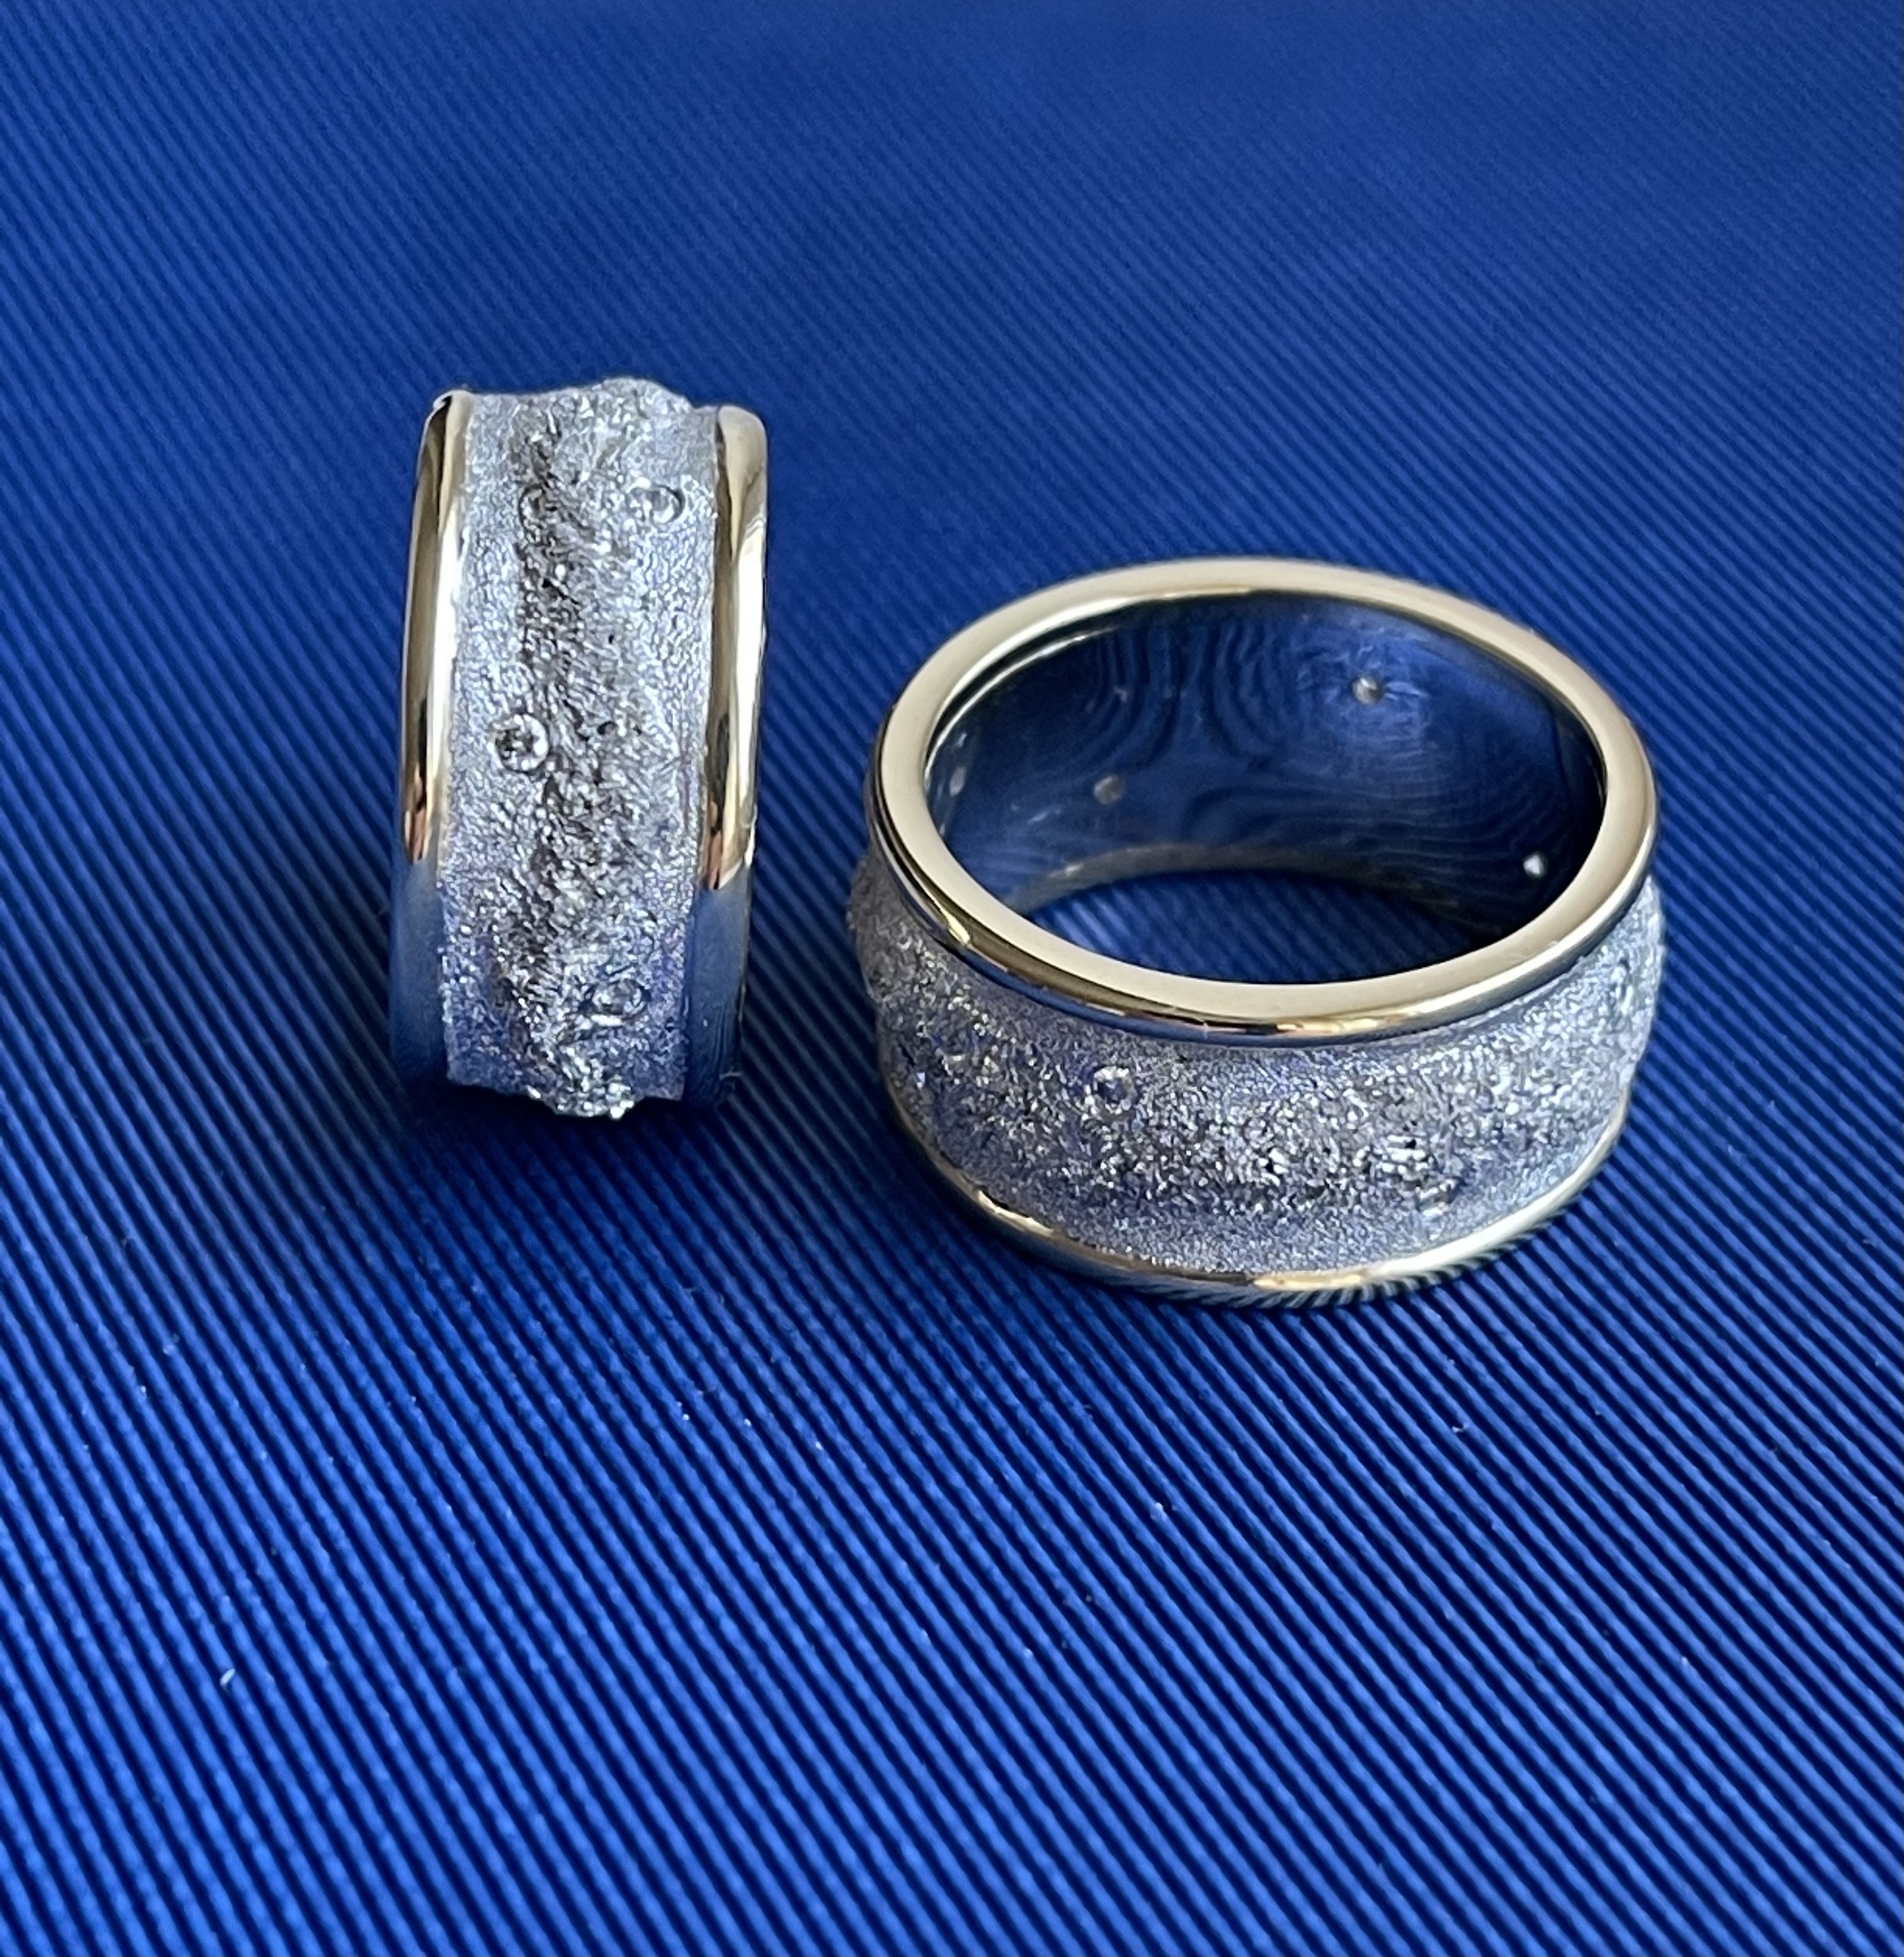 Обручальные кольца с бриллиантами(0,042 ct) из платины и золота 